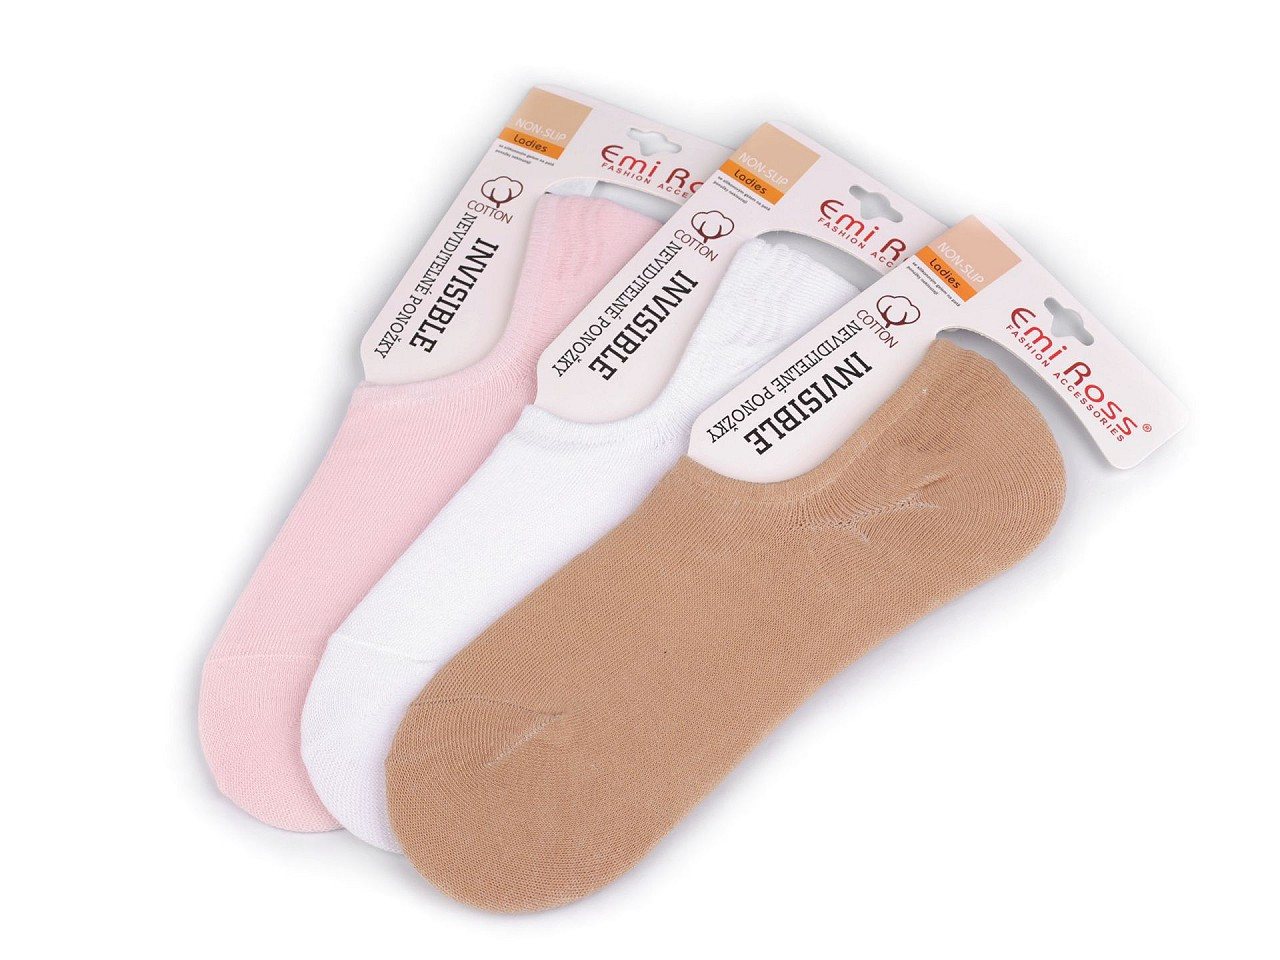 Dámské bavlněné ponožky do tenisek Emi Ross, barva 1 (vel. 35-38) mix